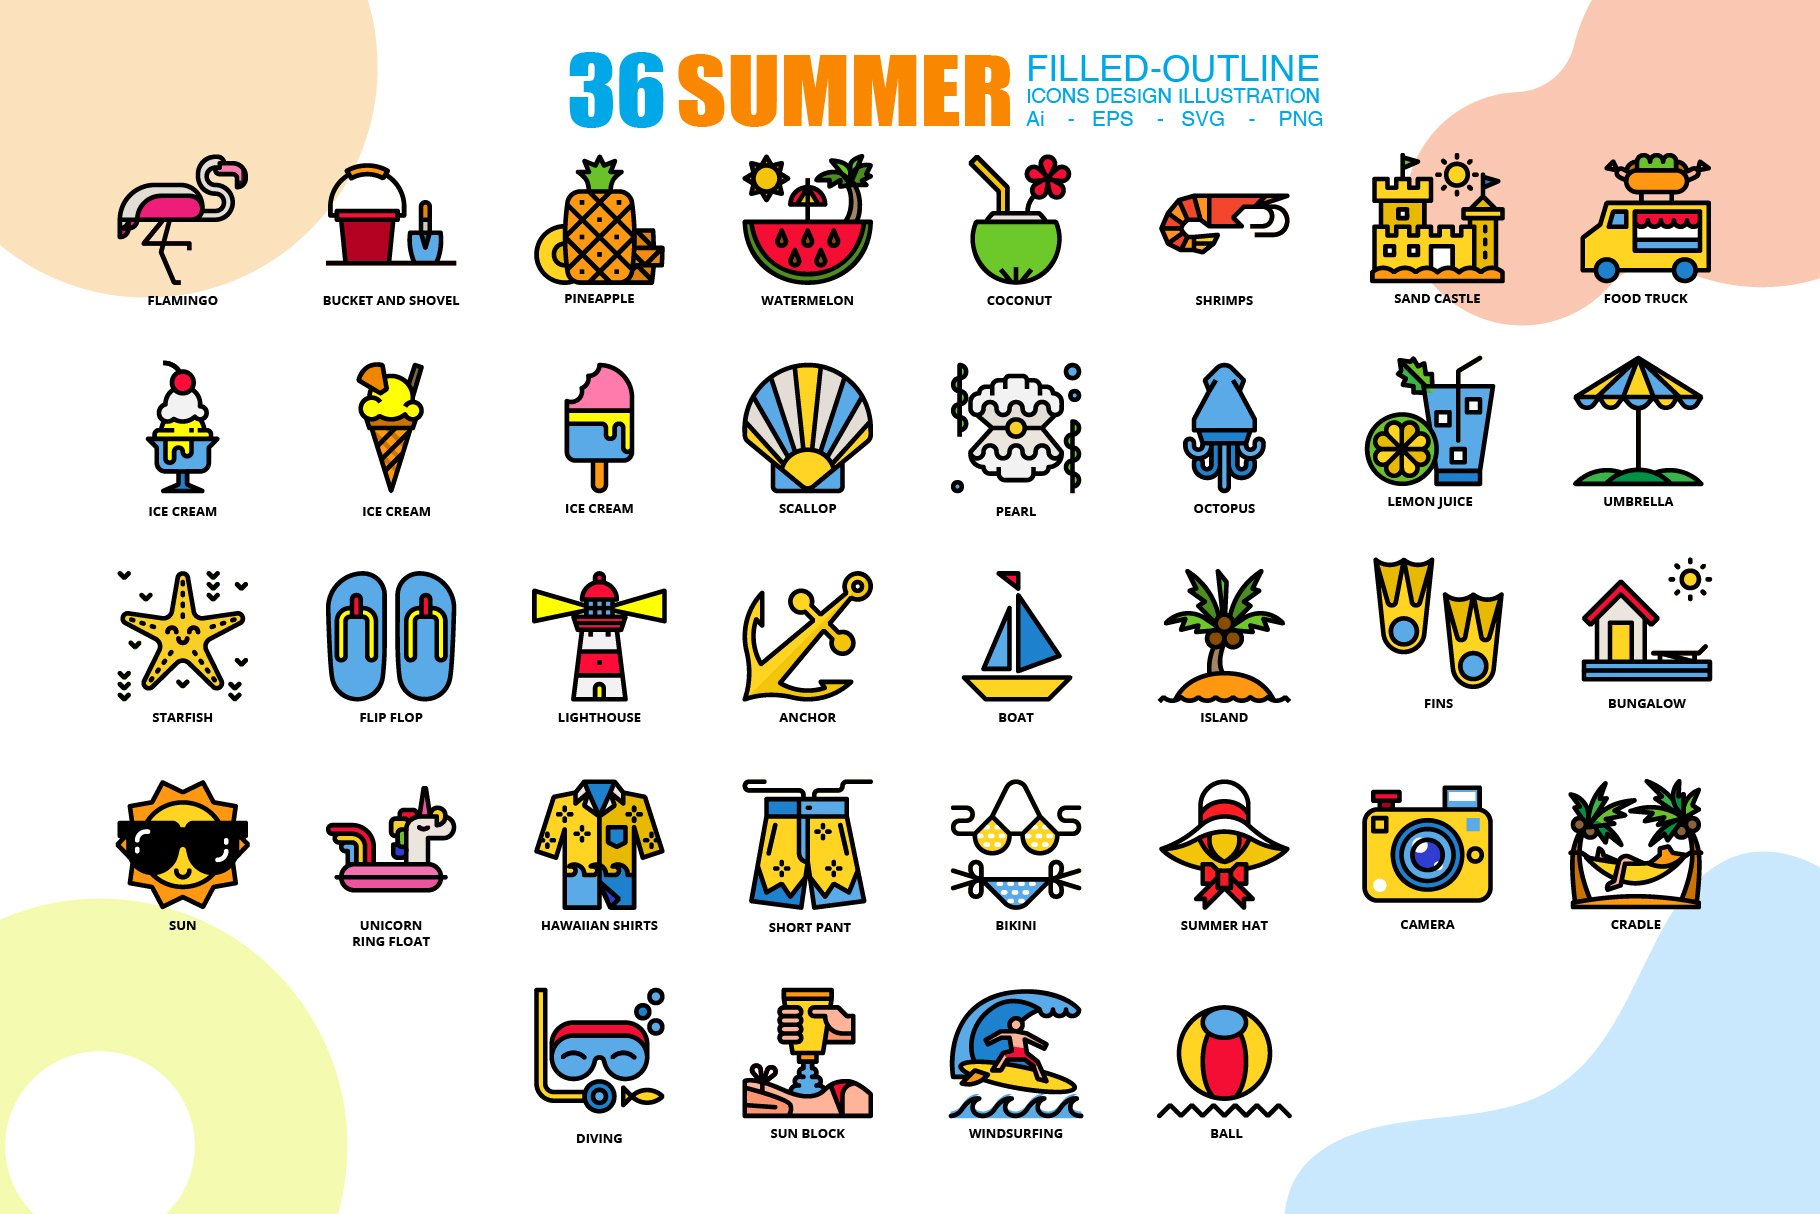 36 Summer icons set 3 style+1 Bonus cover image.